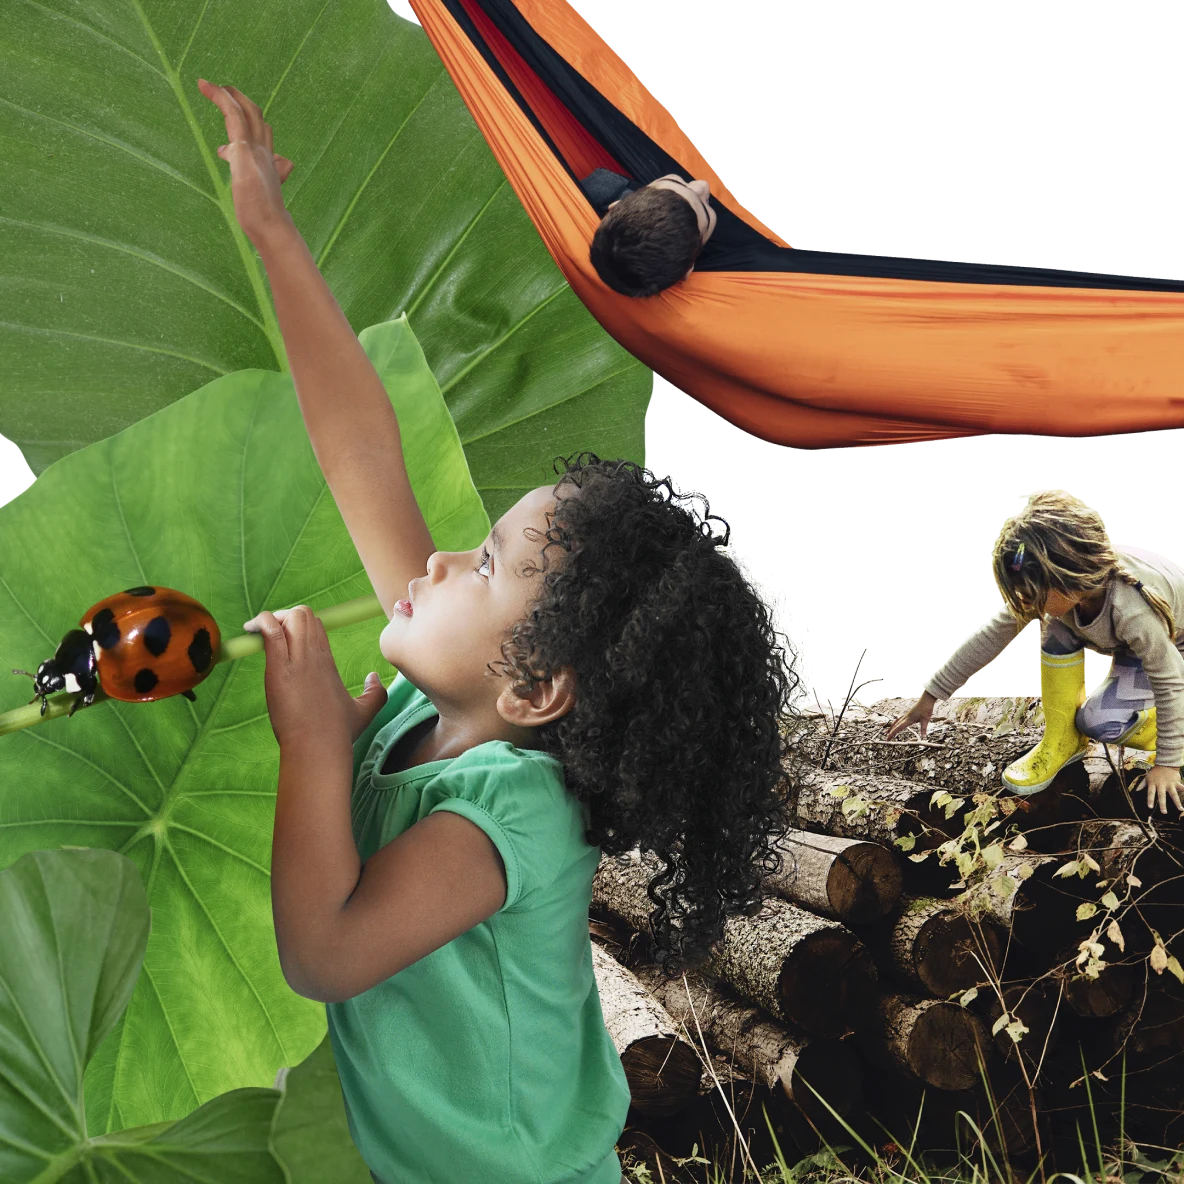 À esquerda, menina negra de camiseta verde tenta alcançar grandes folhas verdes. Uma joaninha rasteja à esquerda. À direita, menina branca sobe em troncos de árvore cortados. No topo, menino branco descansa em uma rede laranja.